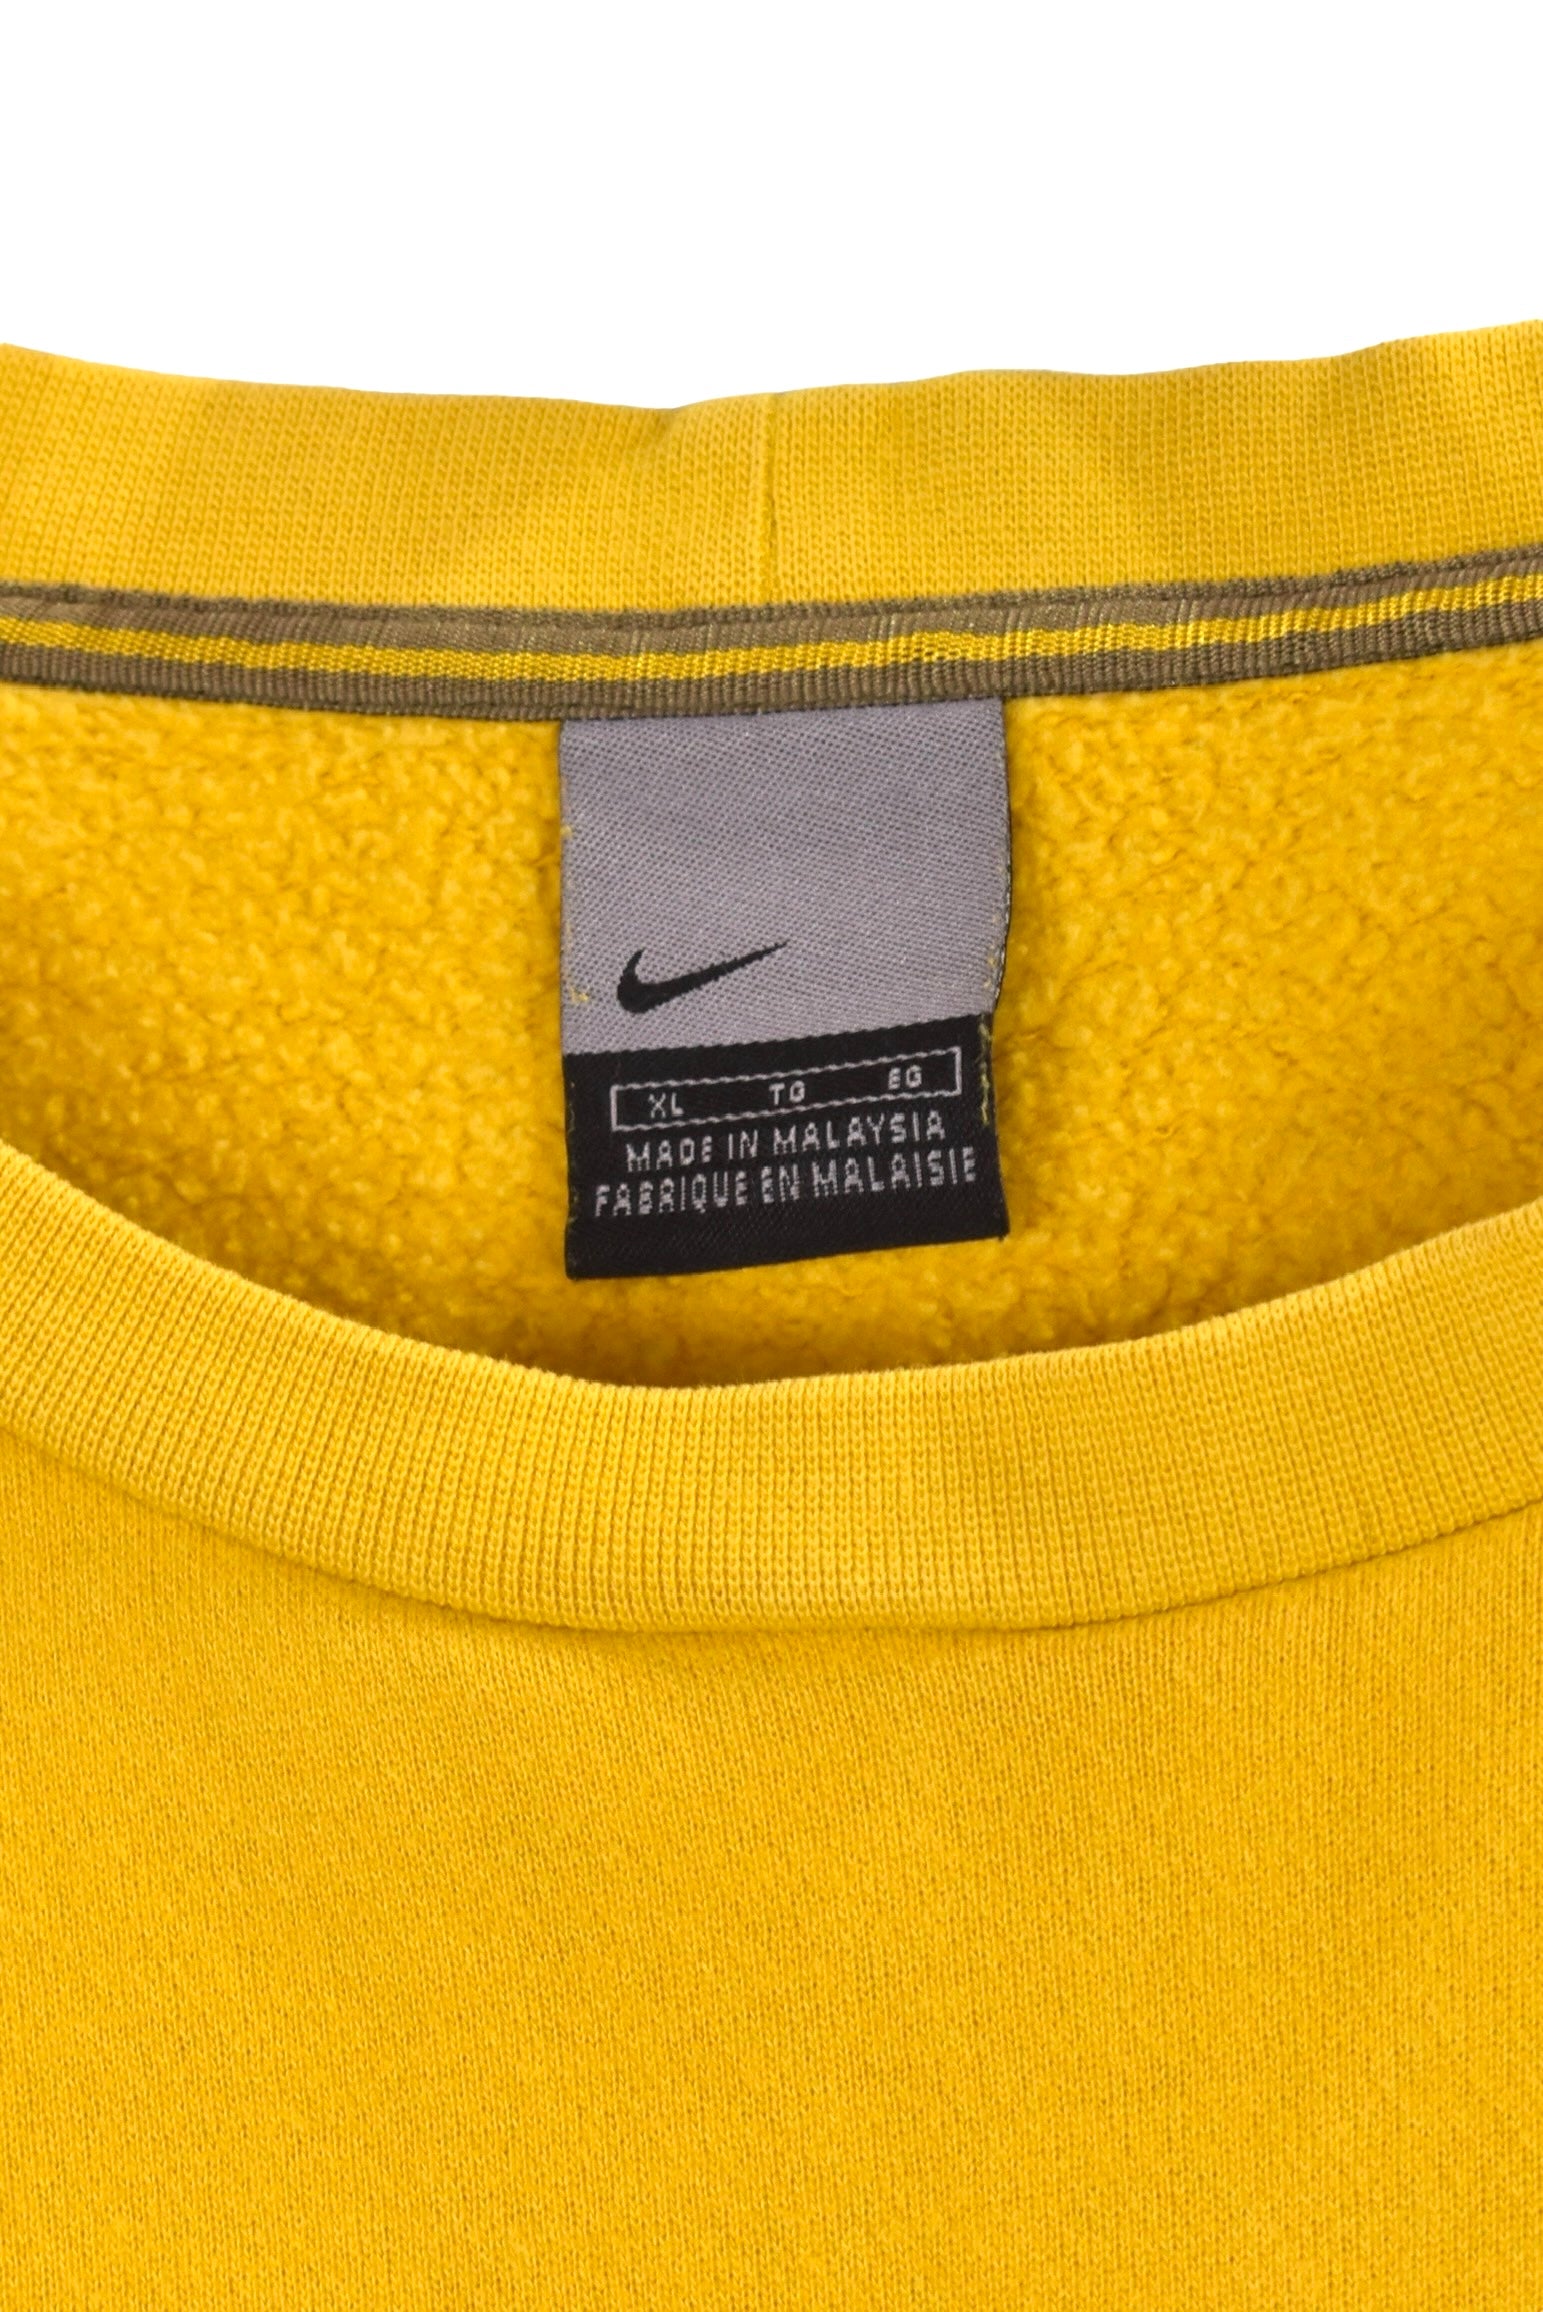 Vintage Nike sweatshirt (XL), yellow embroidered crewneck